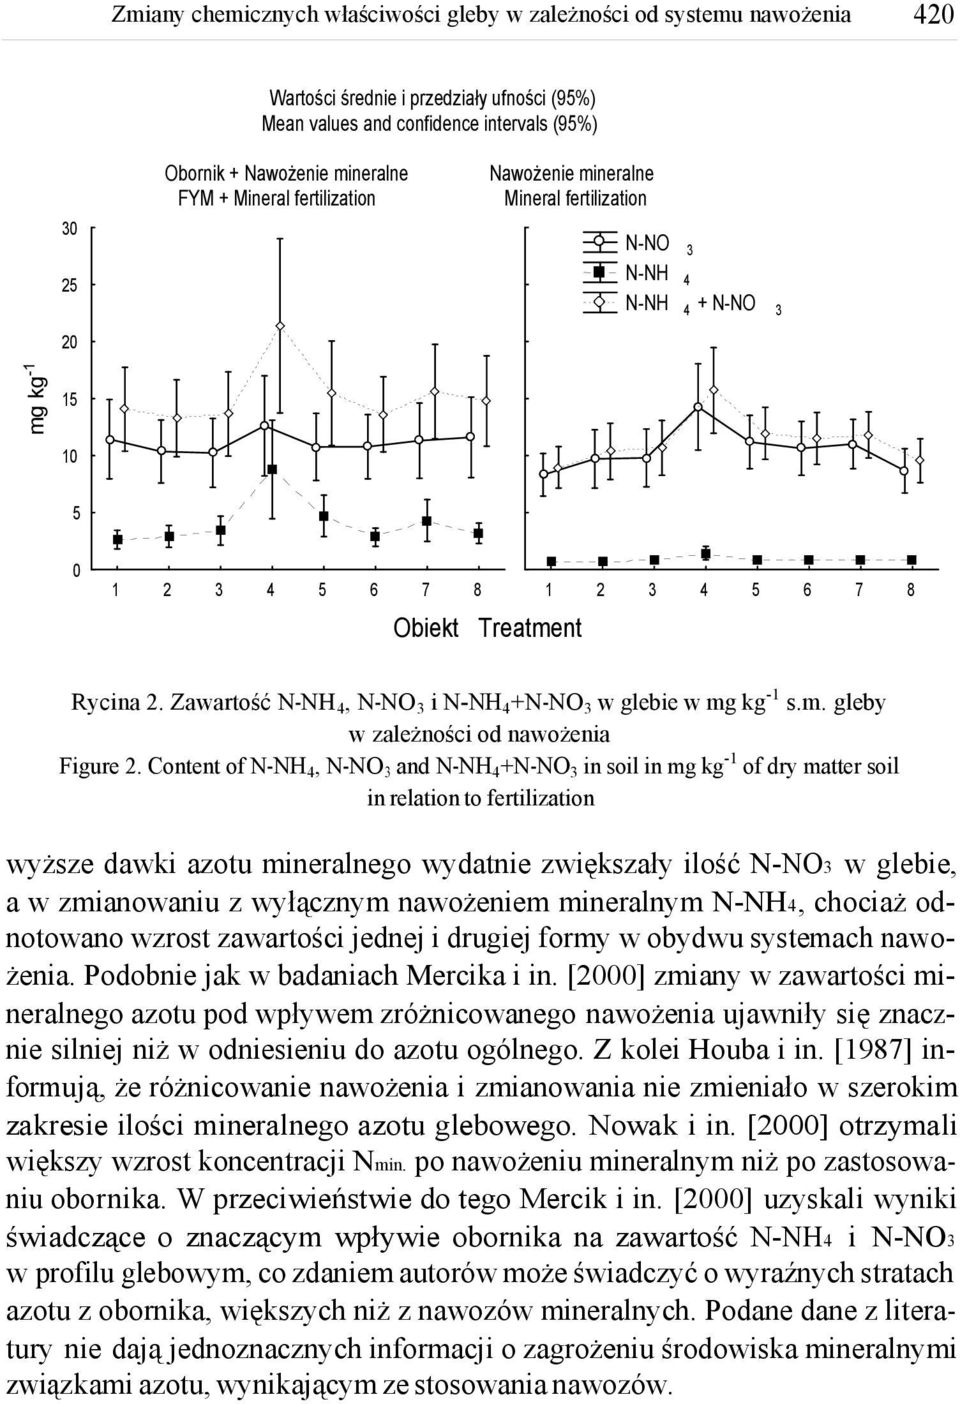 Content of N-NH, N-NO and N-NH+N-NO in soil in mg kg- of dry matter soil in relation to fertilization wyższe dawki azotu mineralnego wydatnie zwiększały ilość N-NO w glebie, a w zmianowaniu z